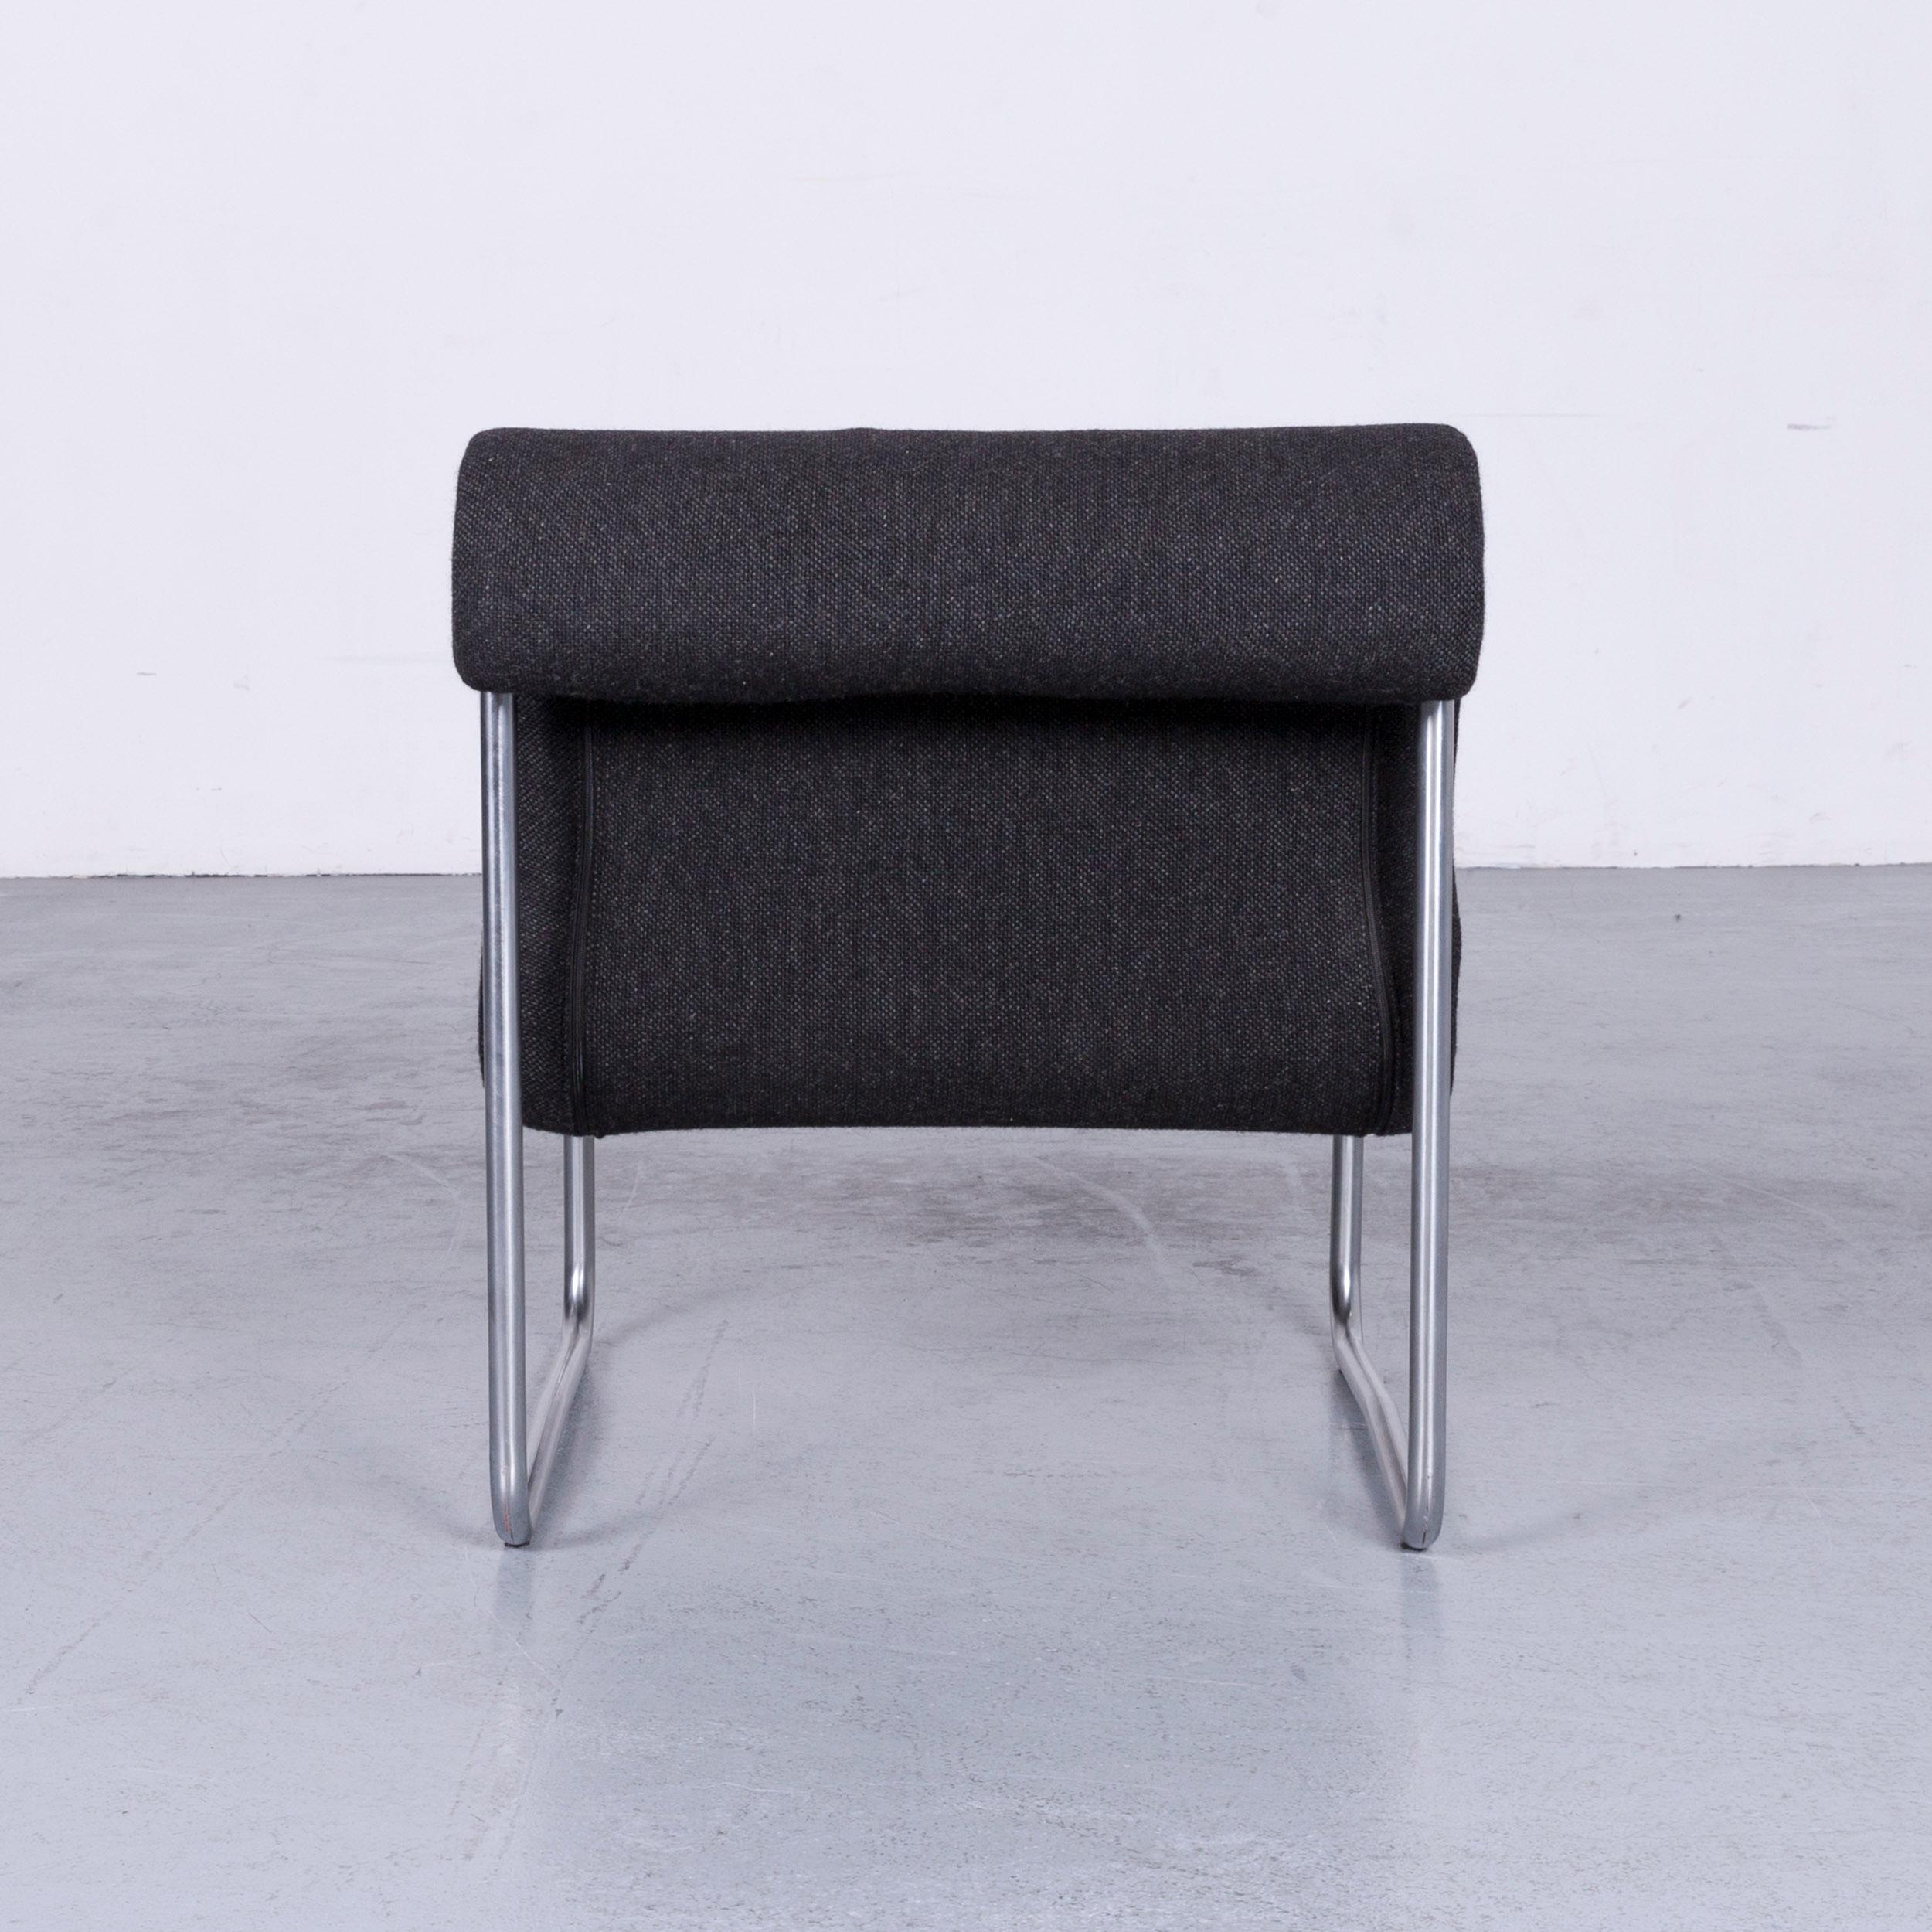 Late 20th Century Fröscher Sitform Jürgen Lange Designer Chair Fabric Grey One-Seat Modern